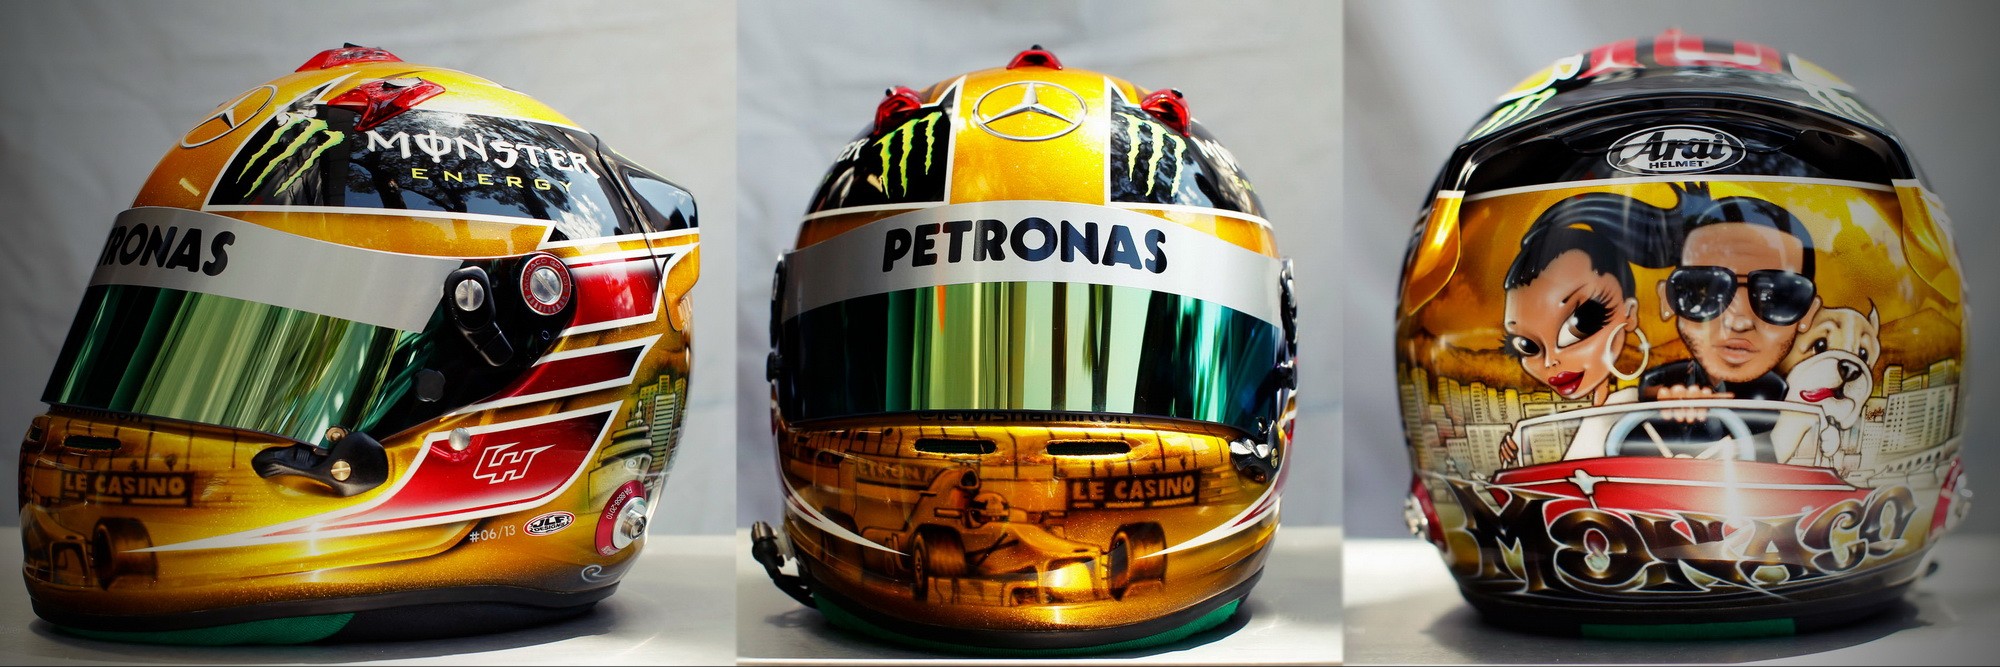 Шлем Льюиса Хэмилтона на Гран-При Монако 2013 | 2013 Monaco Grand Prix helmet of Lewis Hamilton